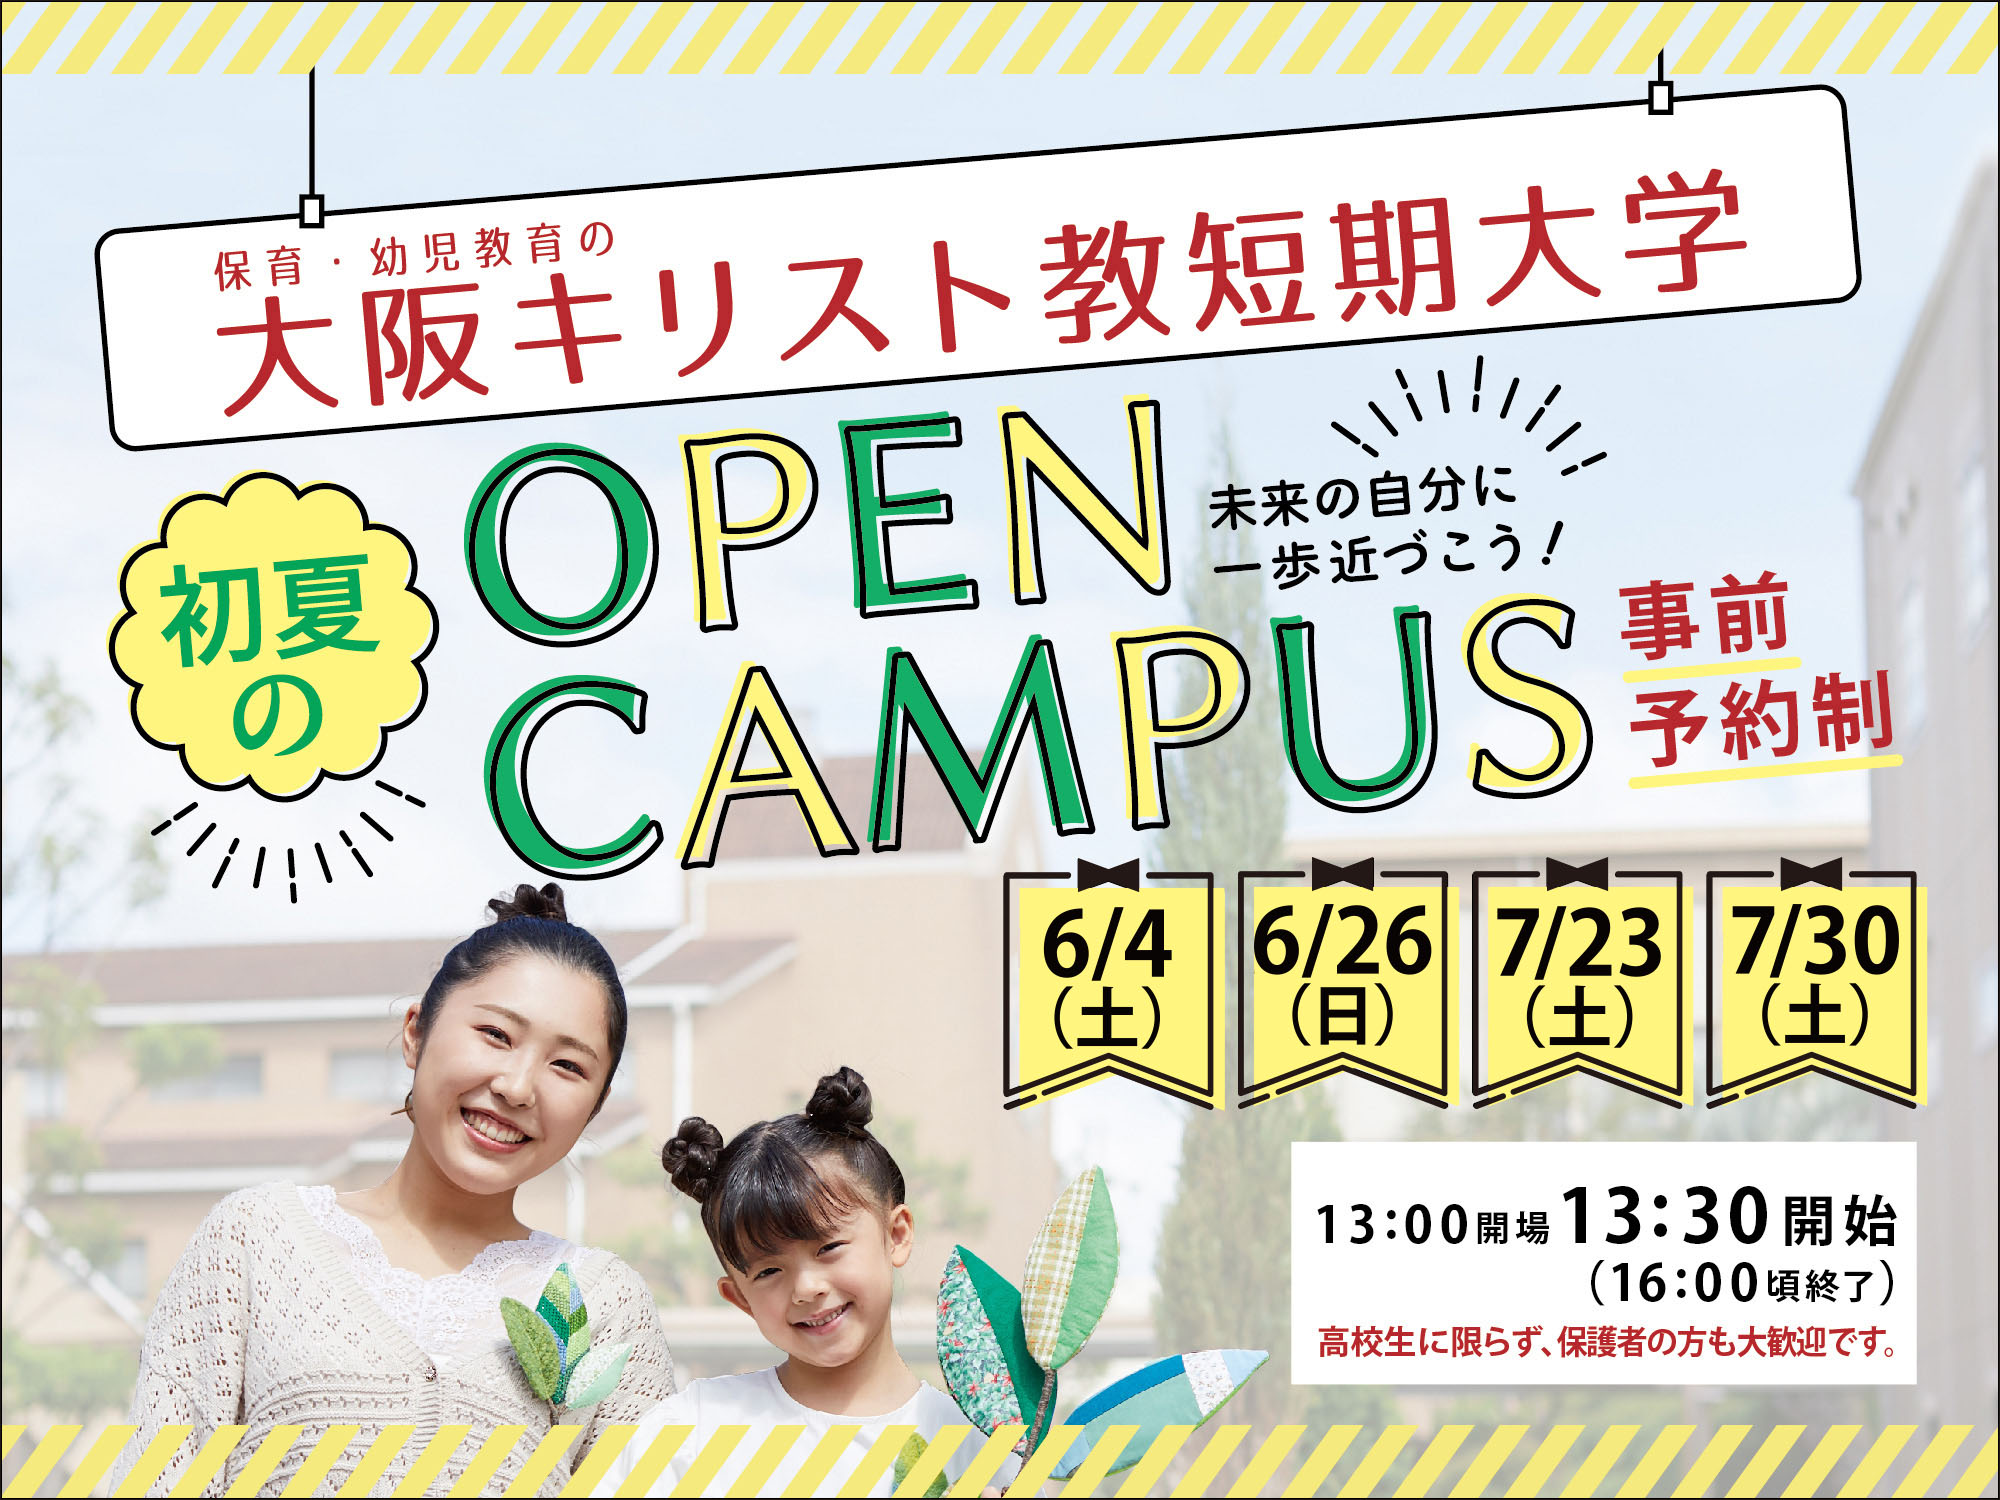 開催予告! 大阪キリスト教短期大学 初夏のOPEN CAMPUS